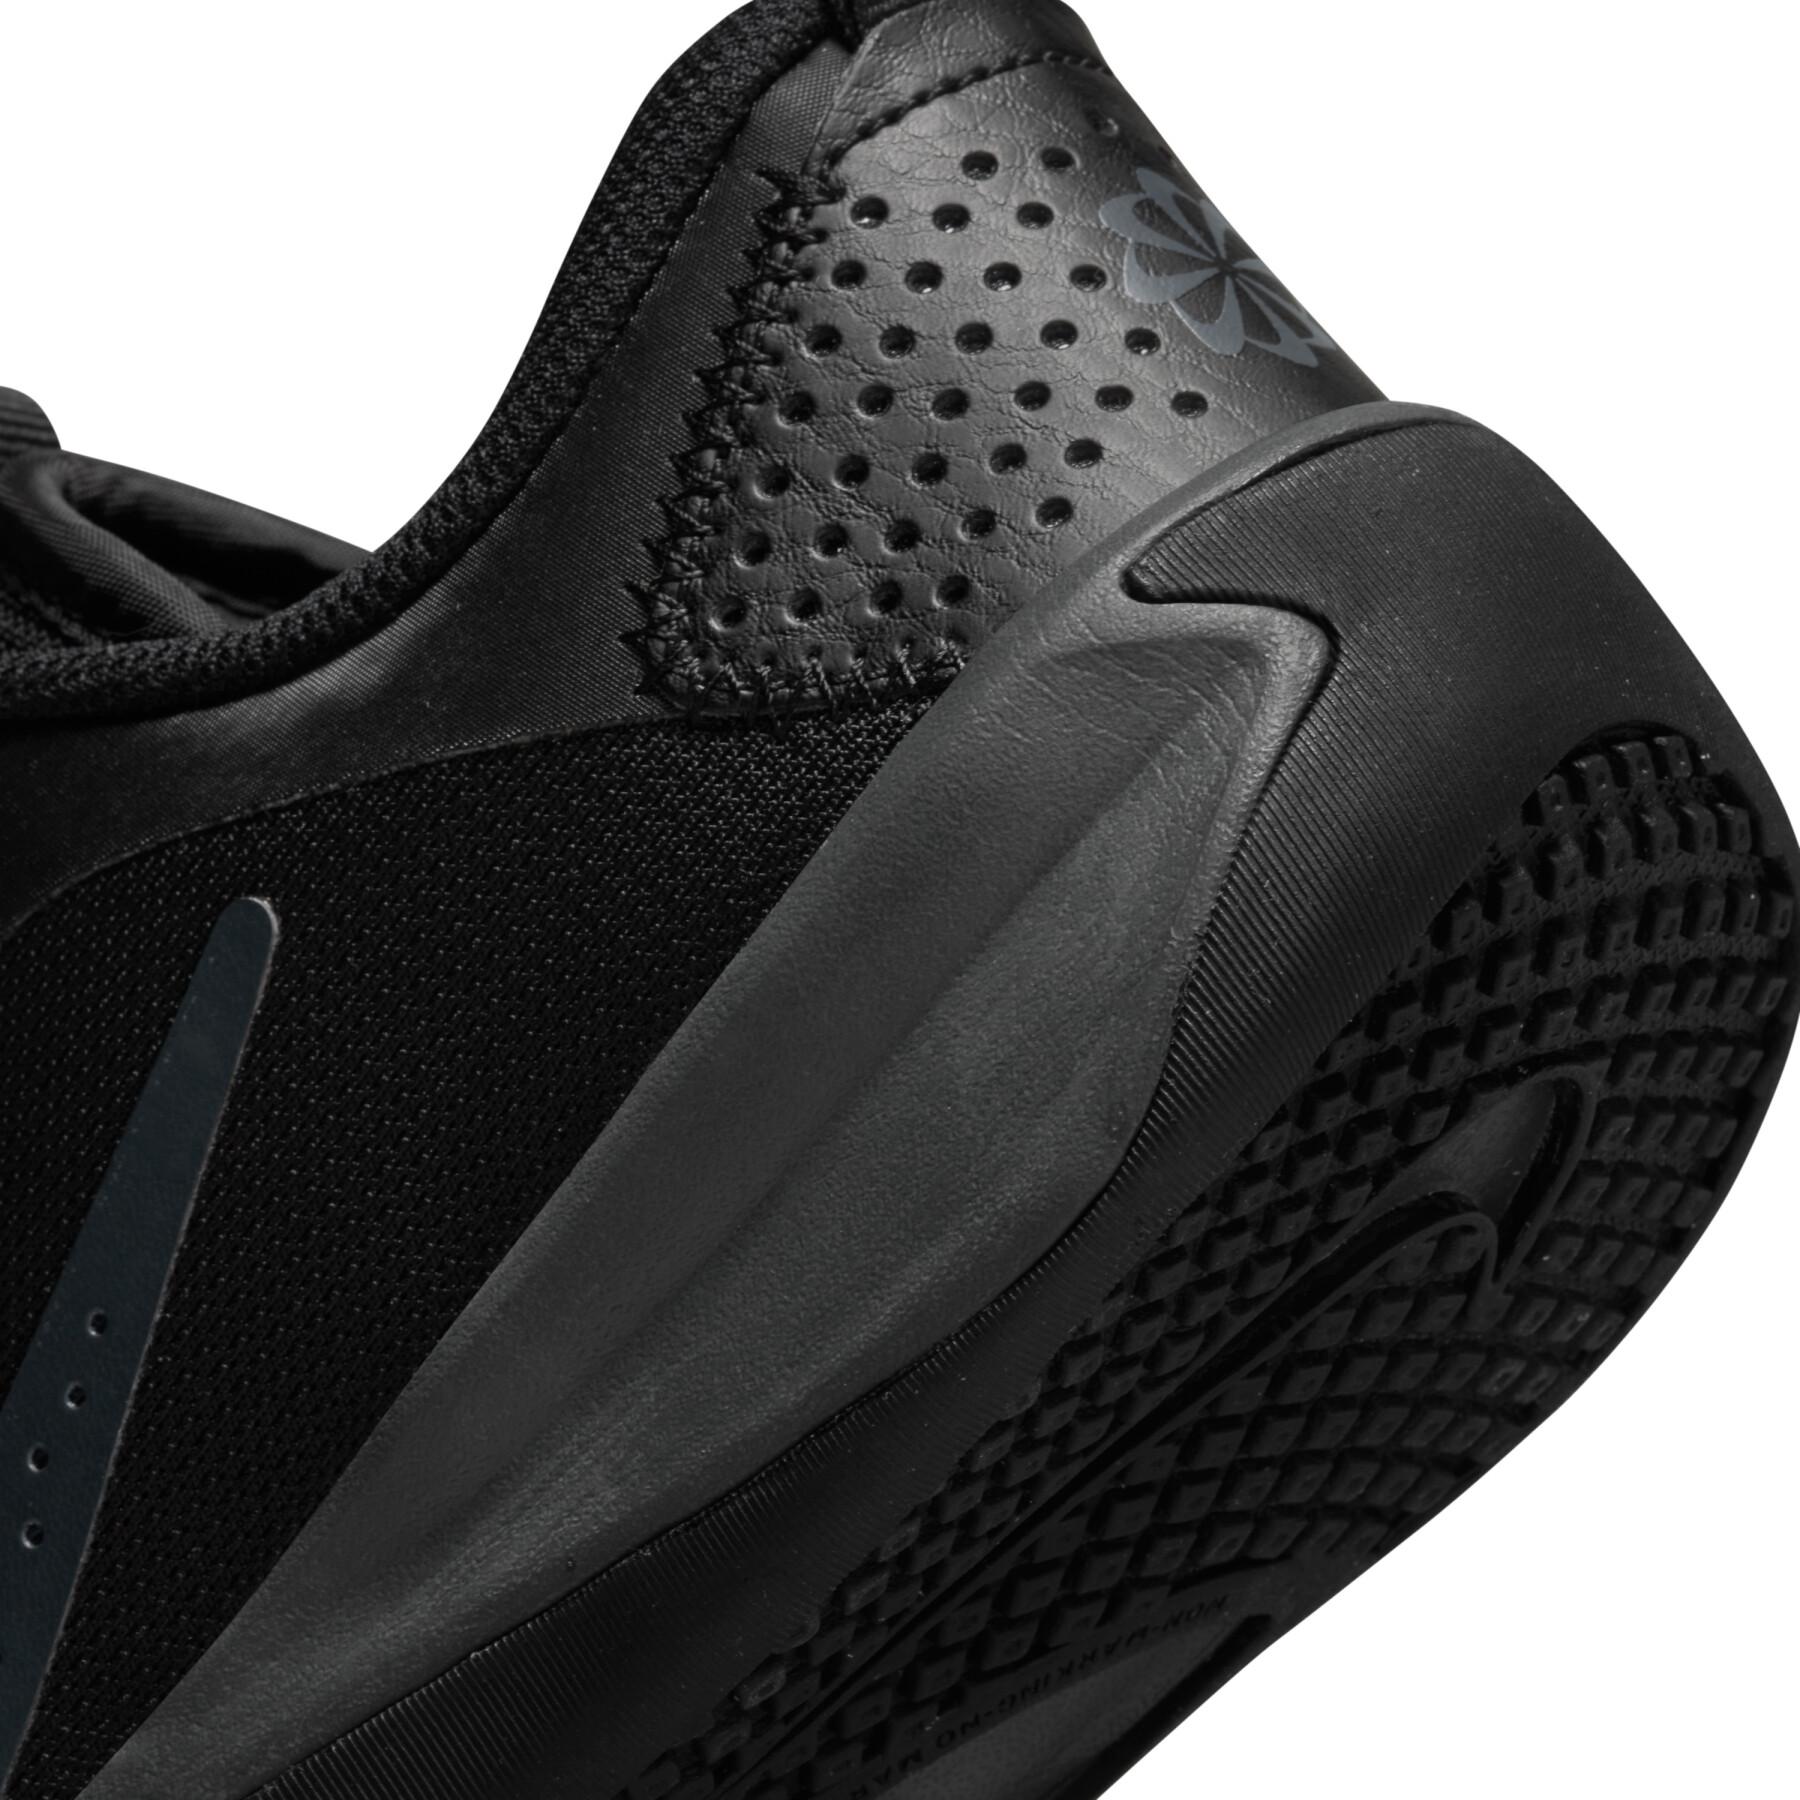 Sneakers Kind Nike Omni Multi-Court